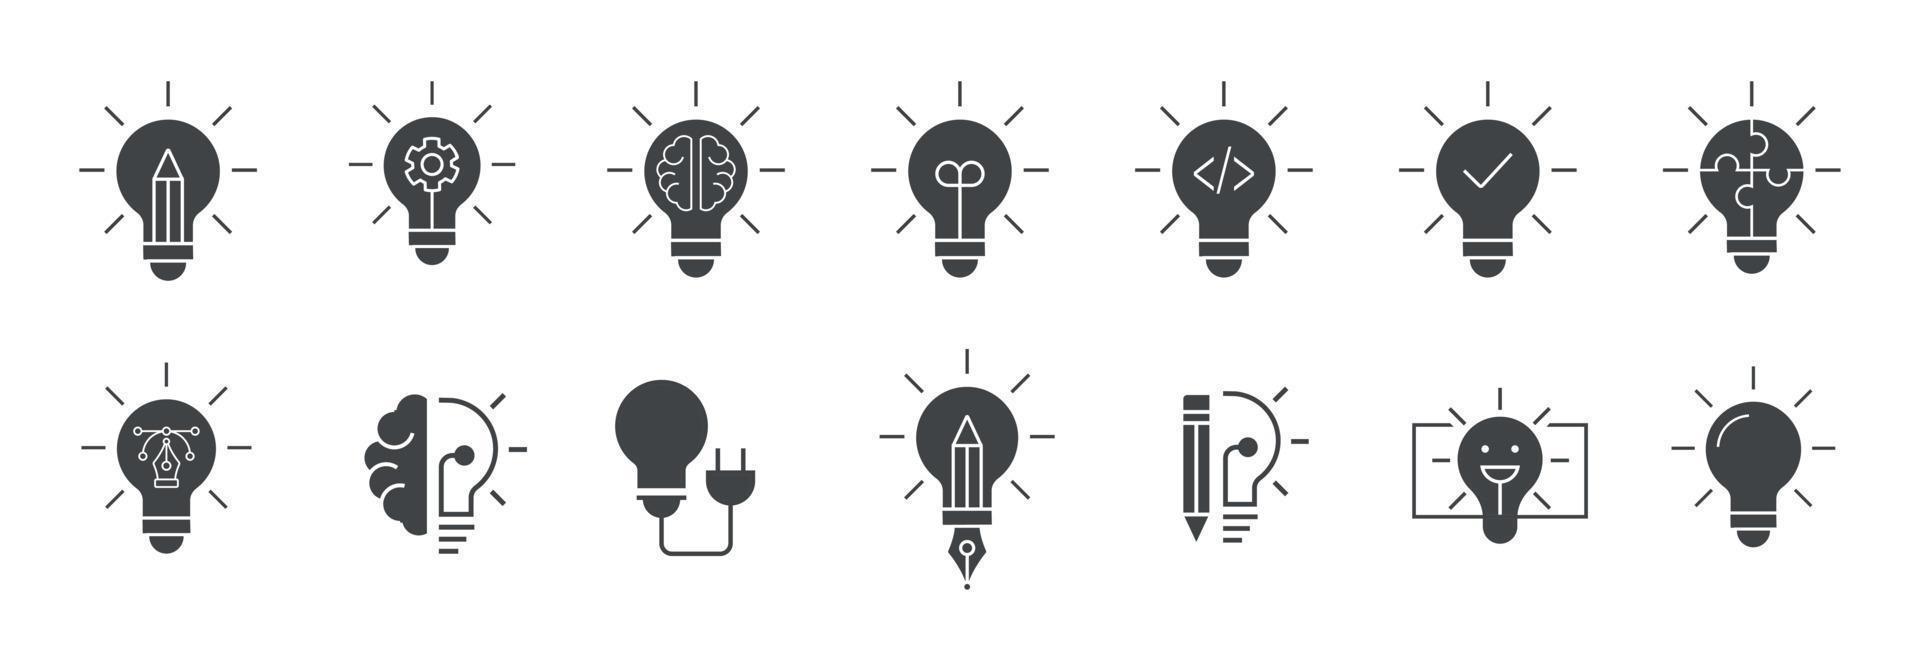 luz lâmpada idéia ícone definir, vetor lâmpada criatividade conceito